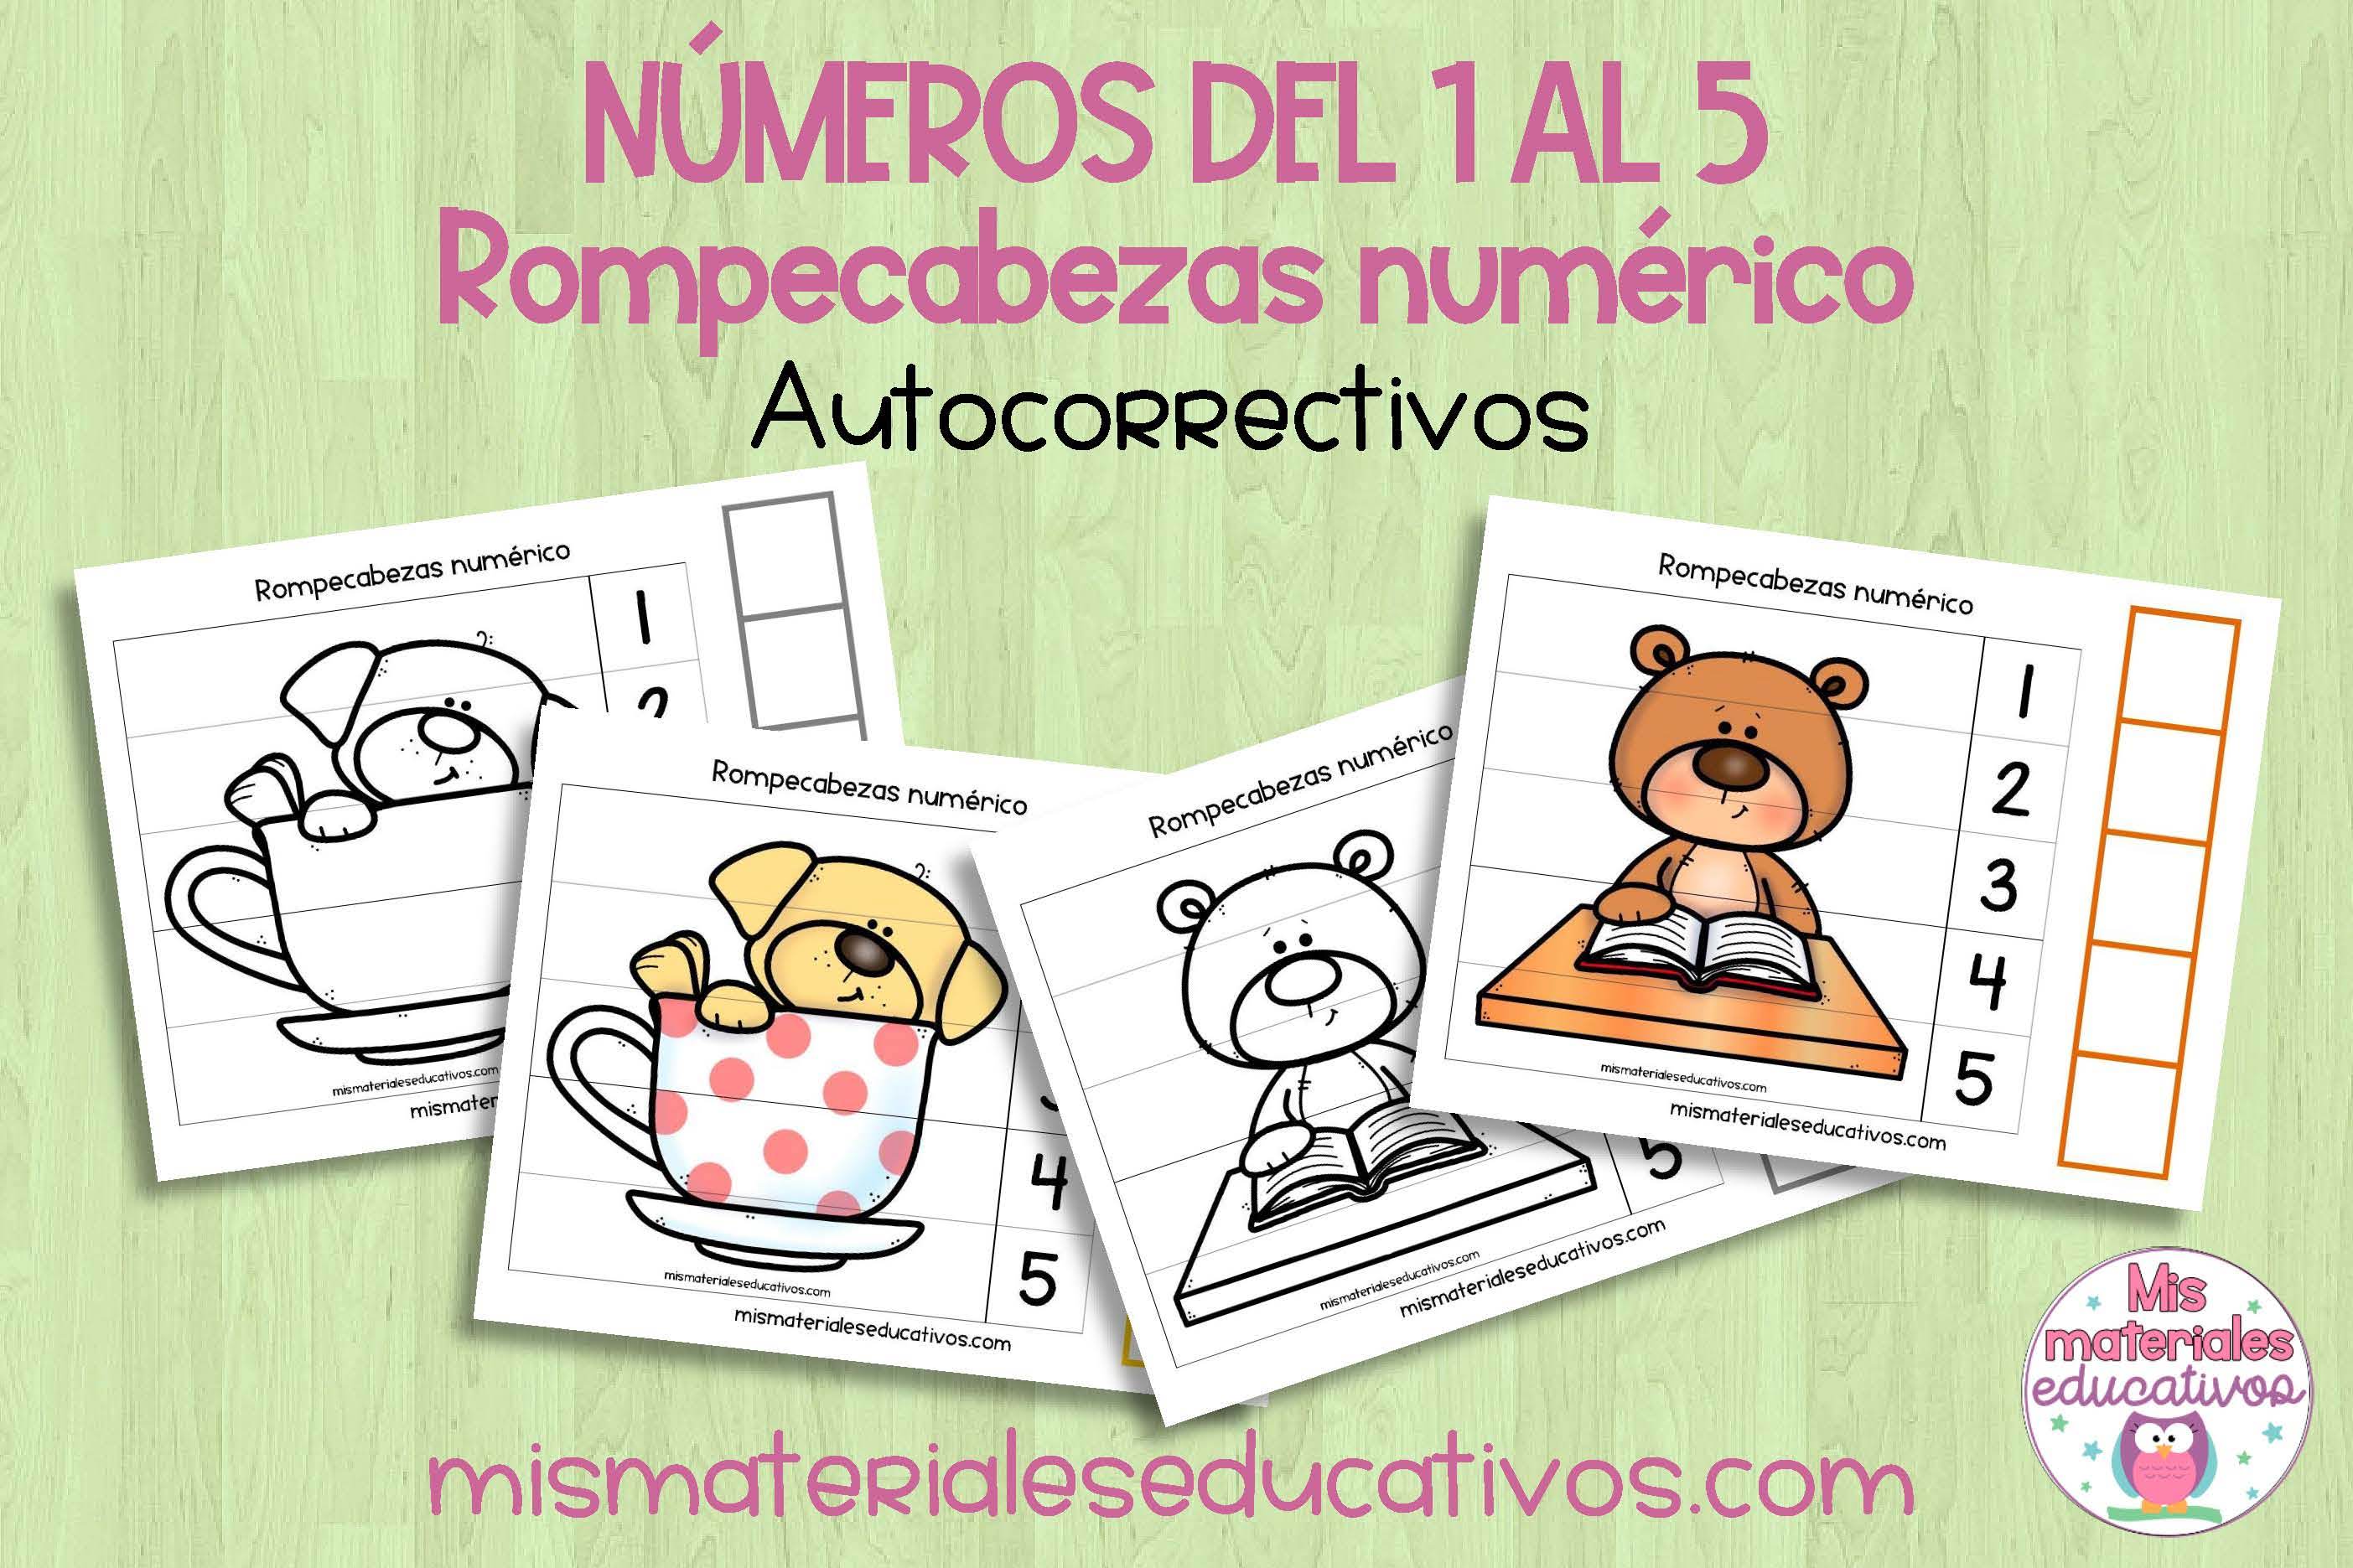 Mis Materiales Educativos: numéricos para imprimir con números del 1 al 5 a y en y negro.